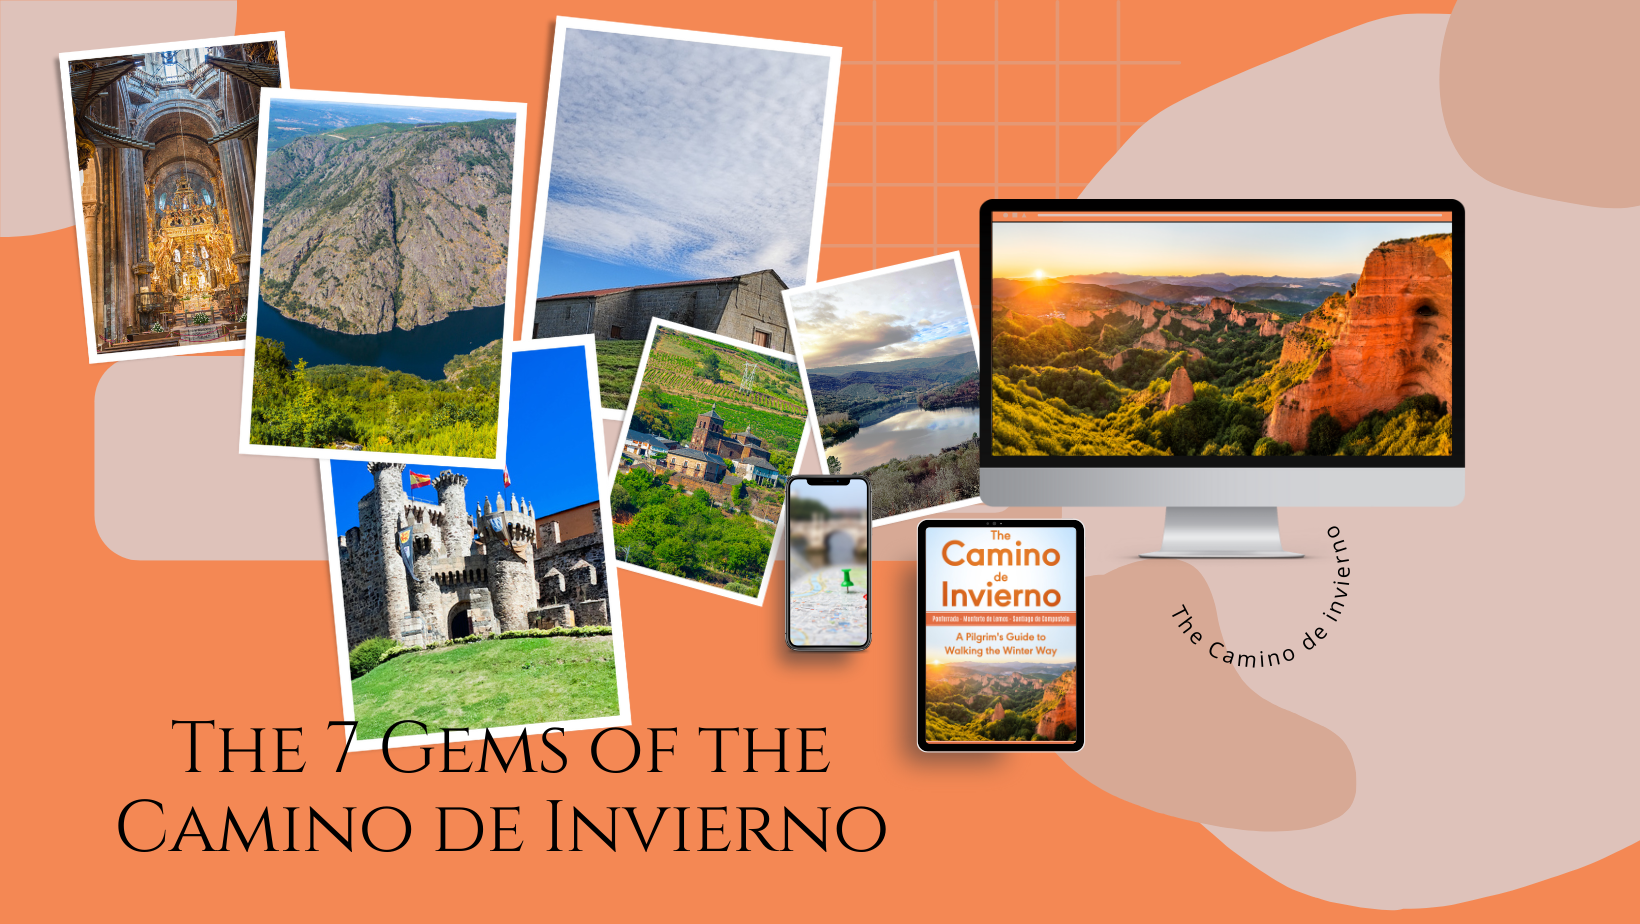 The Camino de Invierno The Pilgrim's Guide The 7 gems